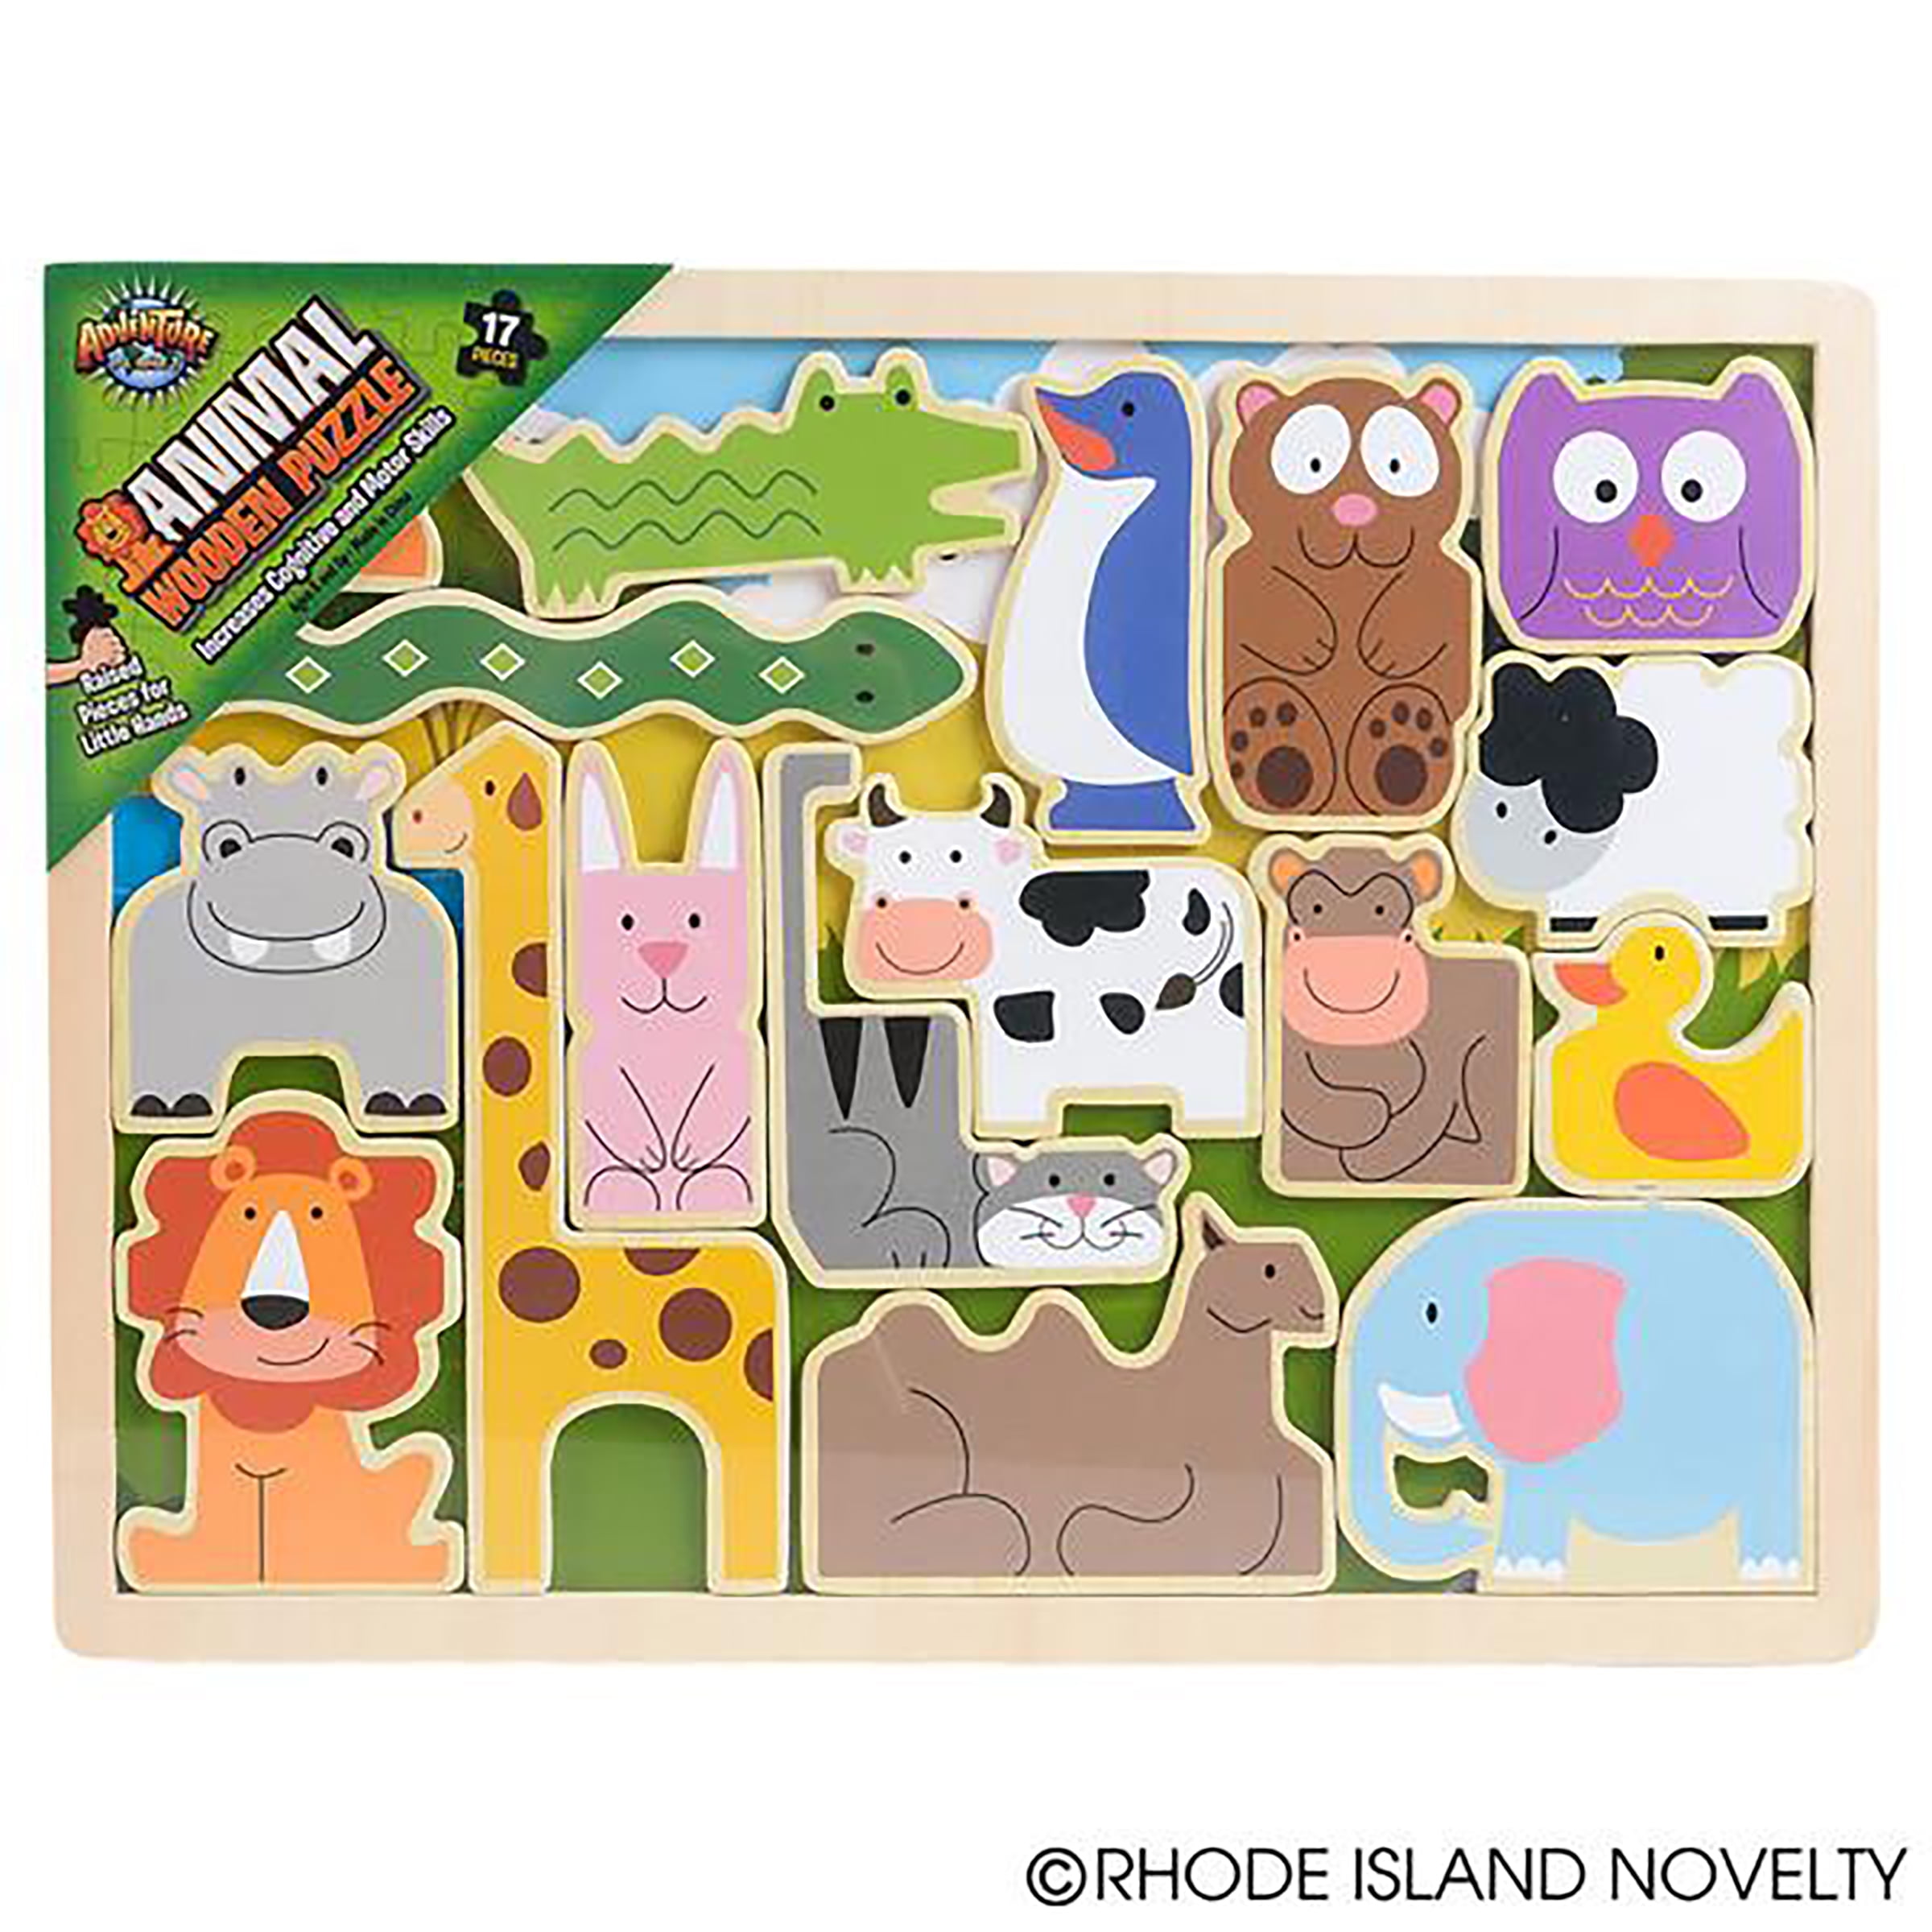 Details about    Large 18” x 12” 16 Piece Wooden Puzzle Farm Animals Picture Under Pieces  EUC 